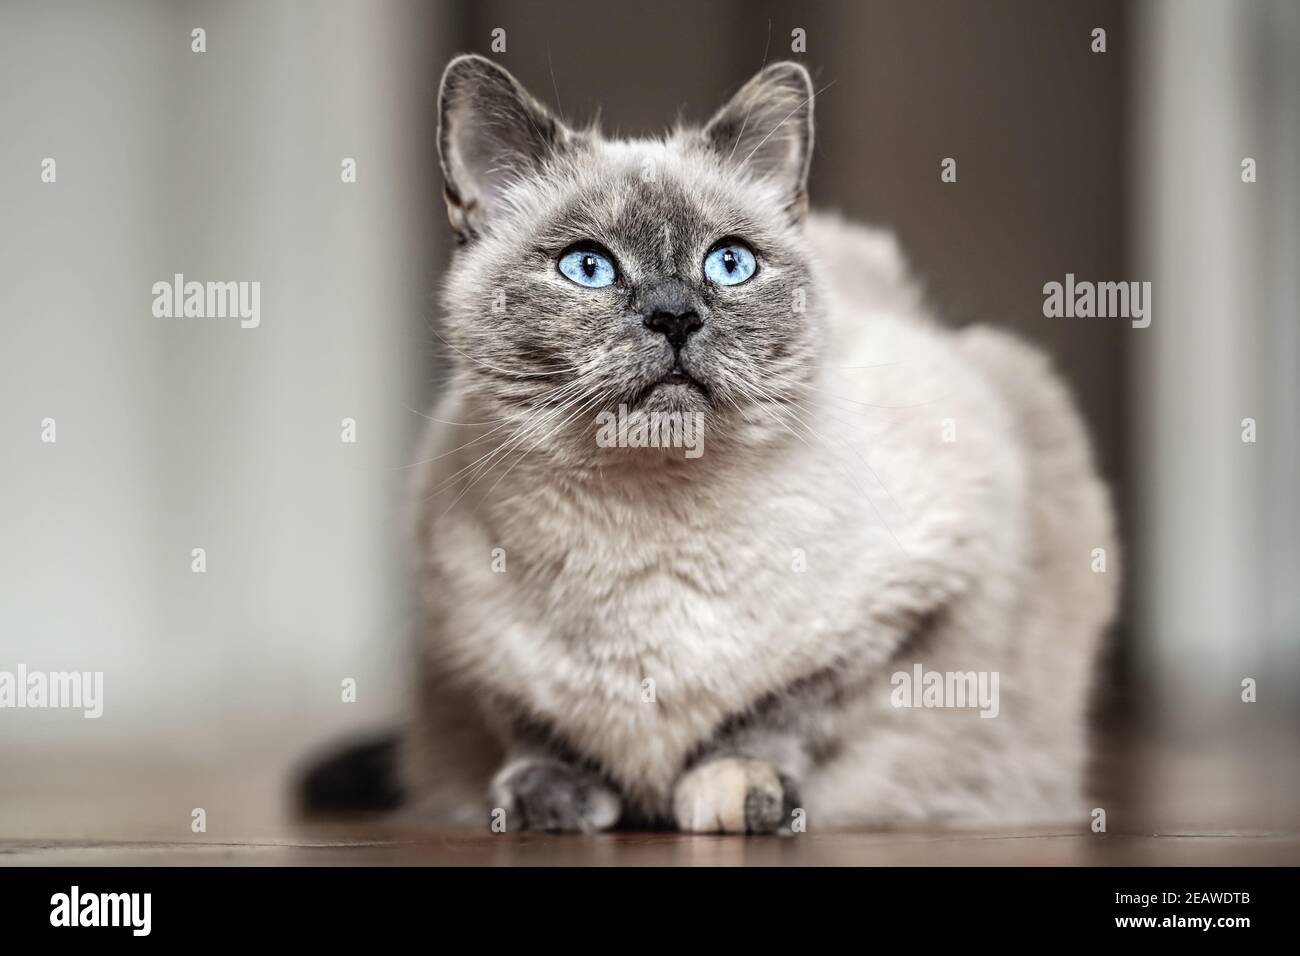 Gatto grigio più vecchio con occhi blu piercing, posa su pavimento di legno, primo piano profondità di campo foto Foto Stock